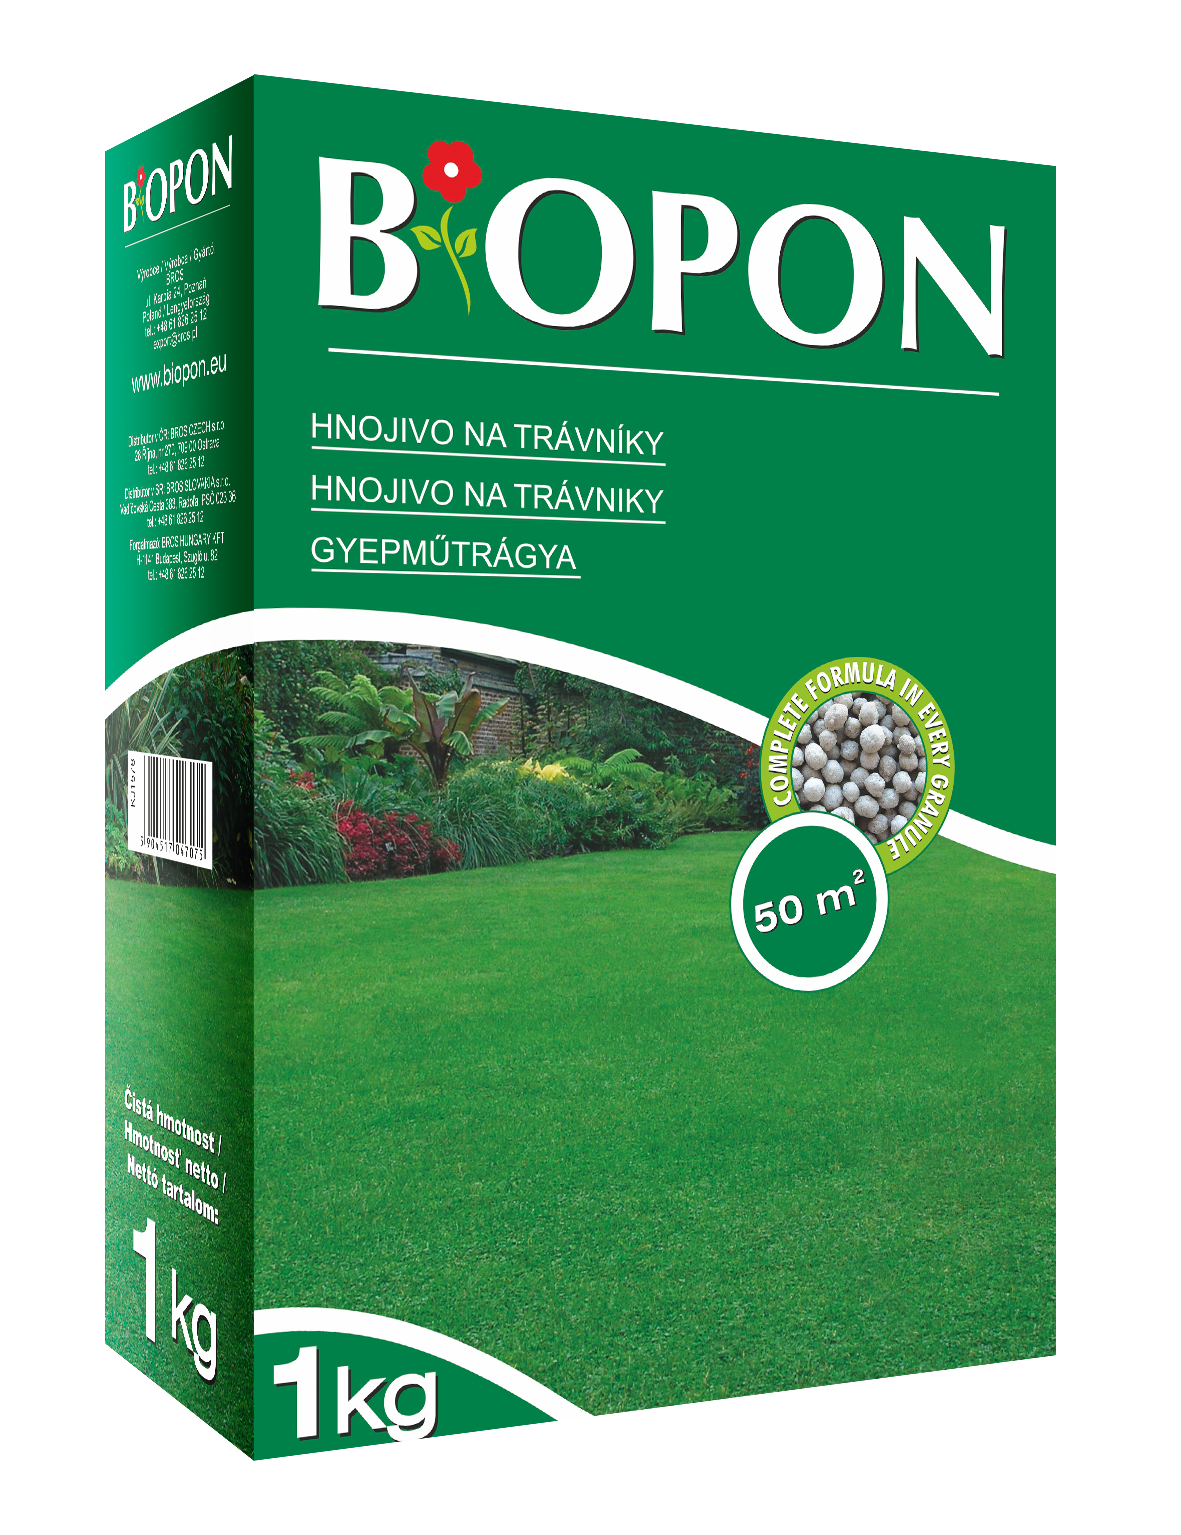 Biopon lawn fertilizer 1 kg